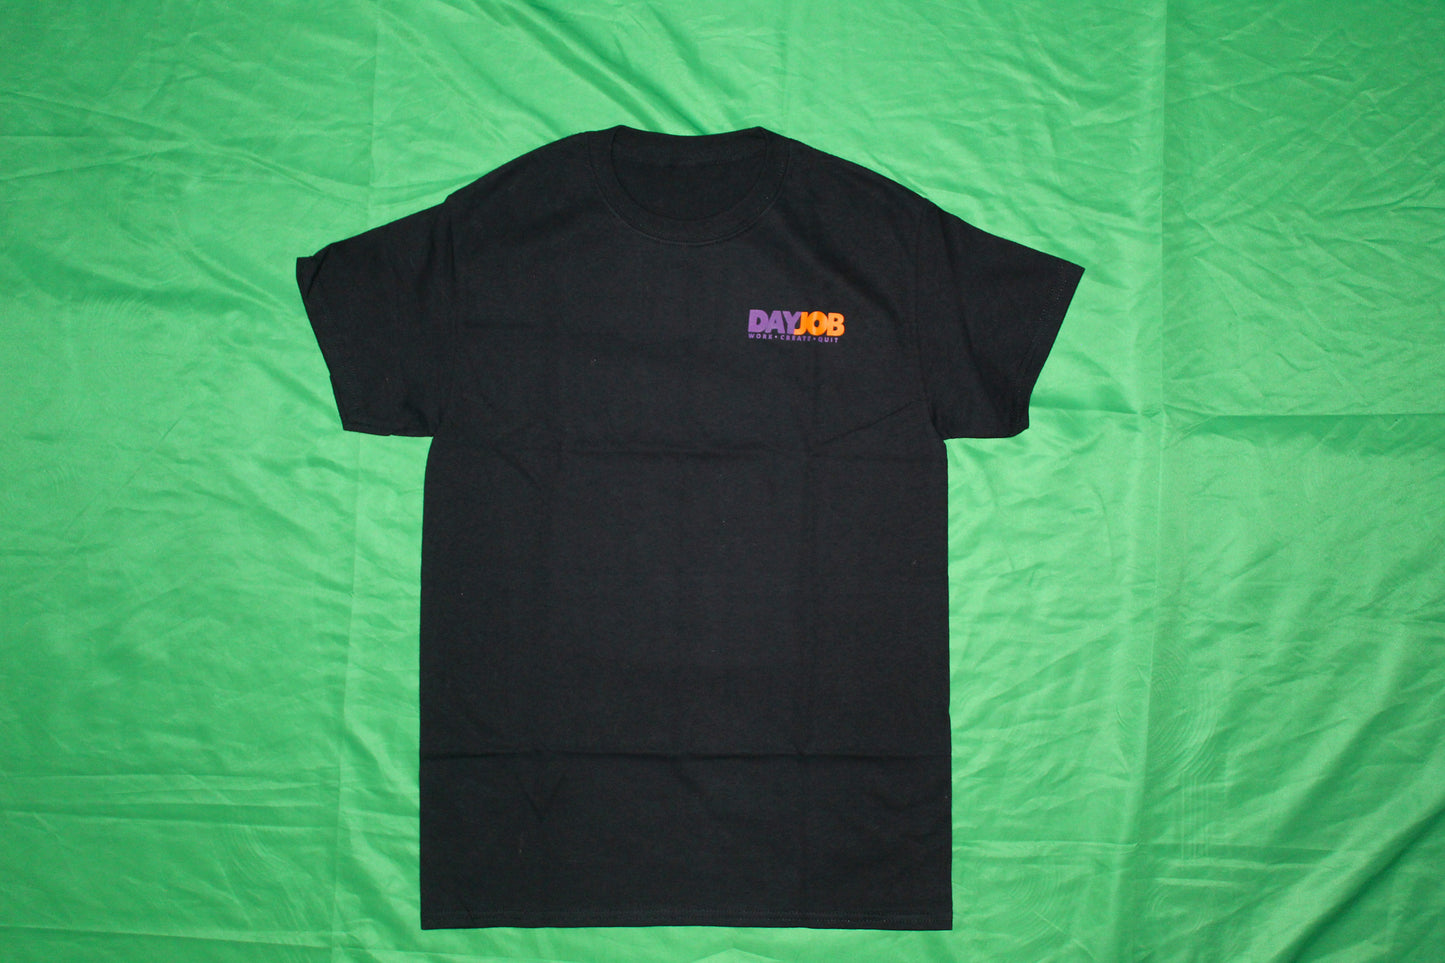 JOBX (black t-shirt)